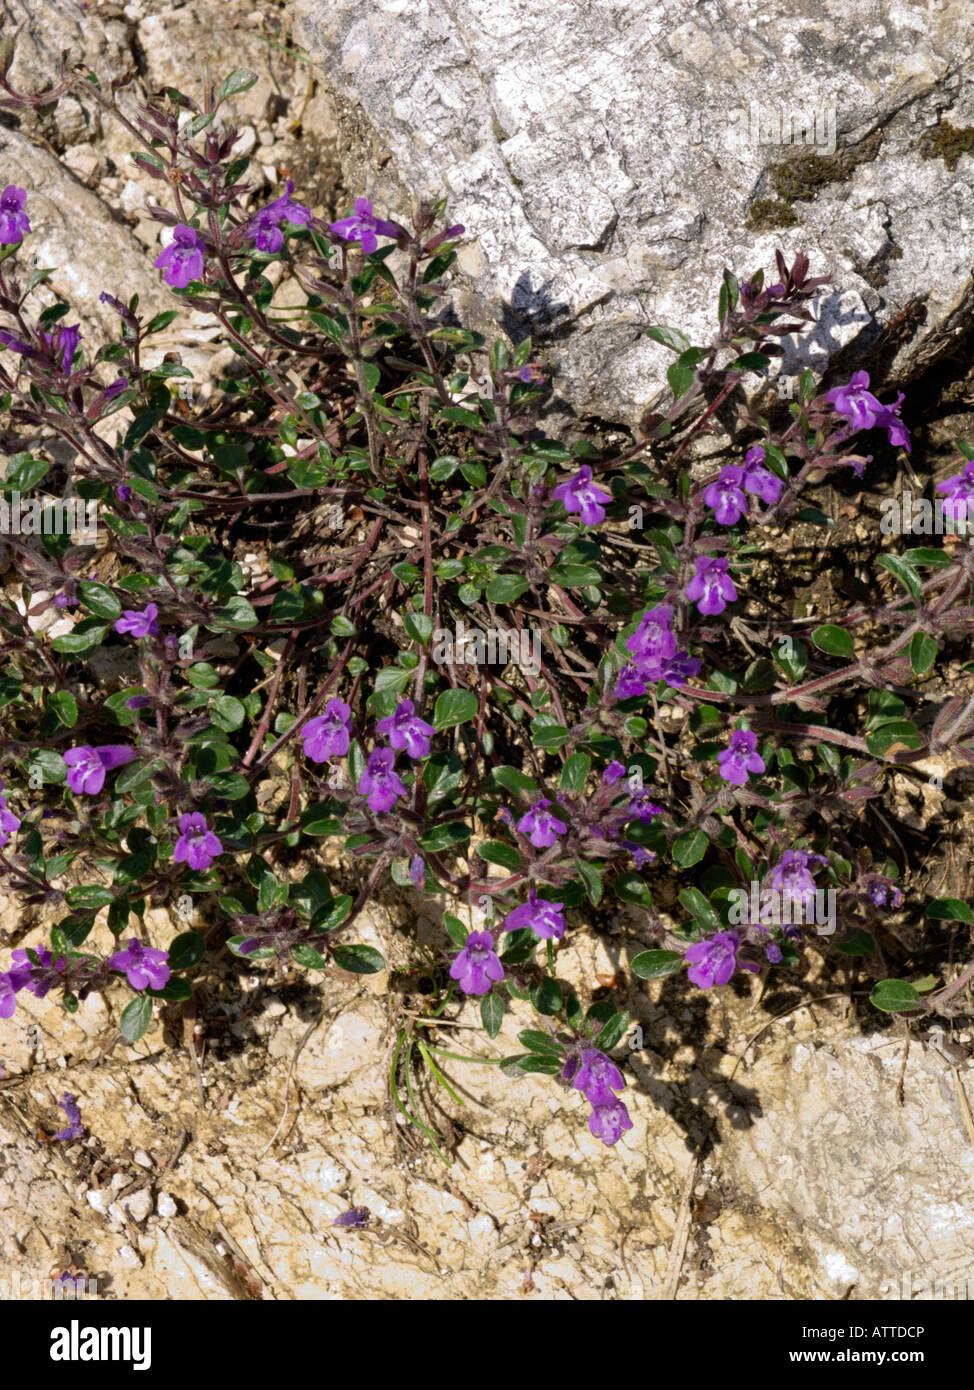 Alpine calaminth (Acinos alpinus syn. Calamintha alpina) Stock Photo